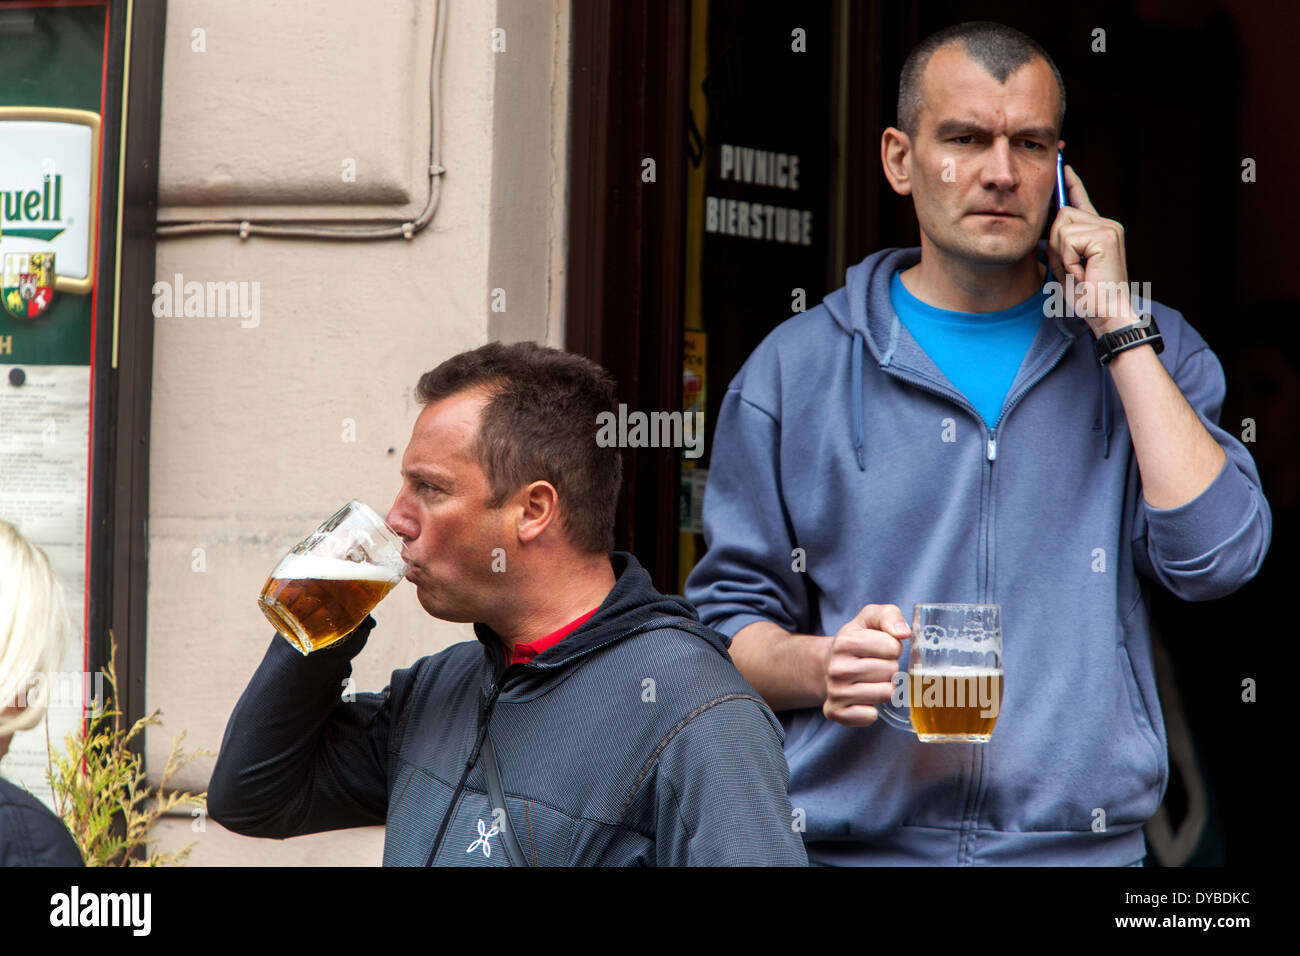 Zwei Männer trinken Bier vor einer Bar auf einer Straße, Prag Altstadt Tschechische Republik Alltag Stockfoto